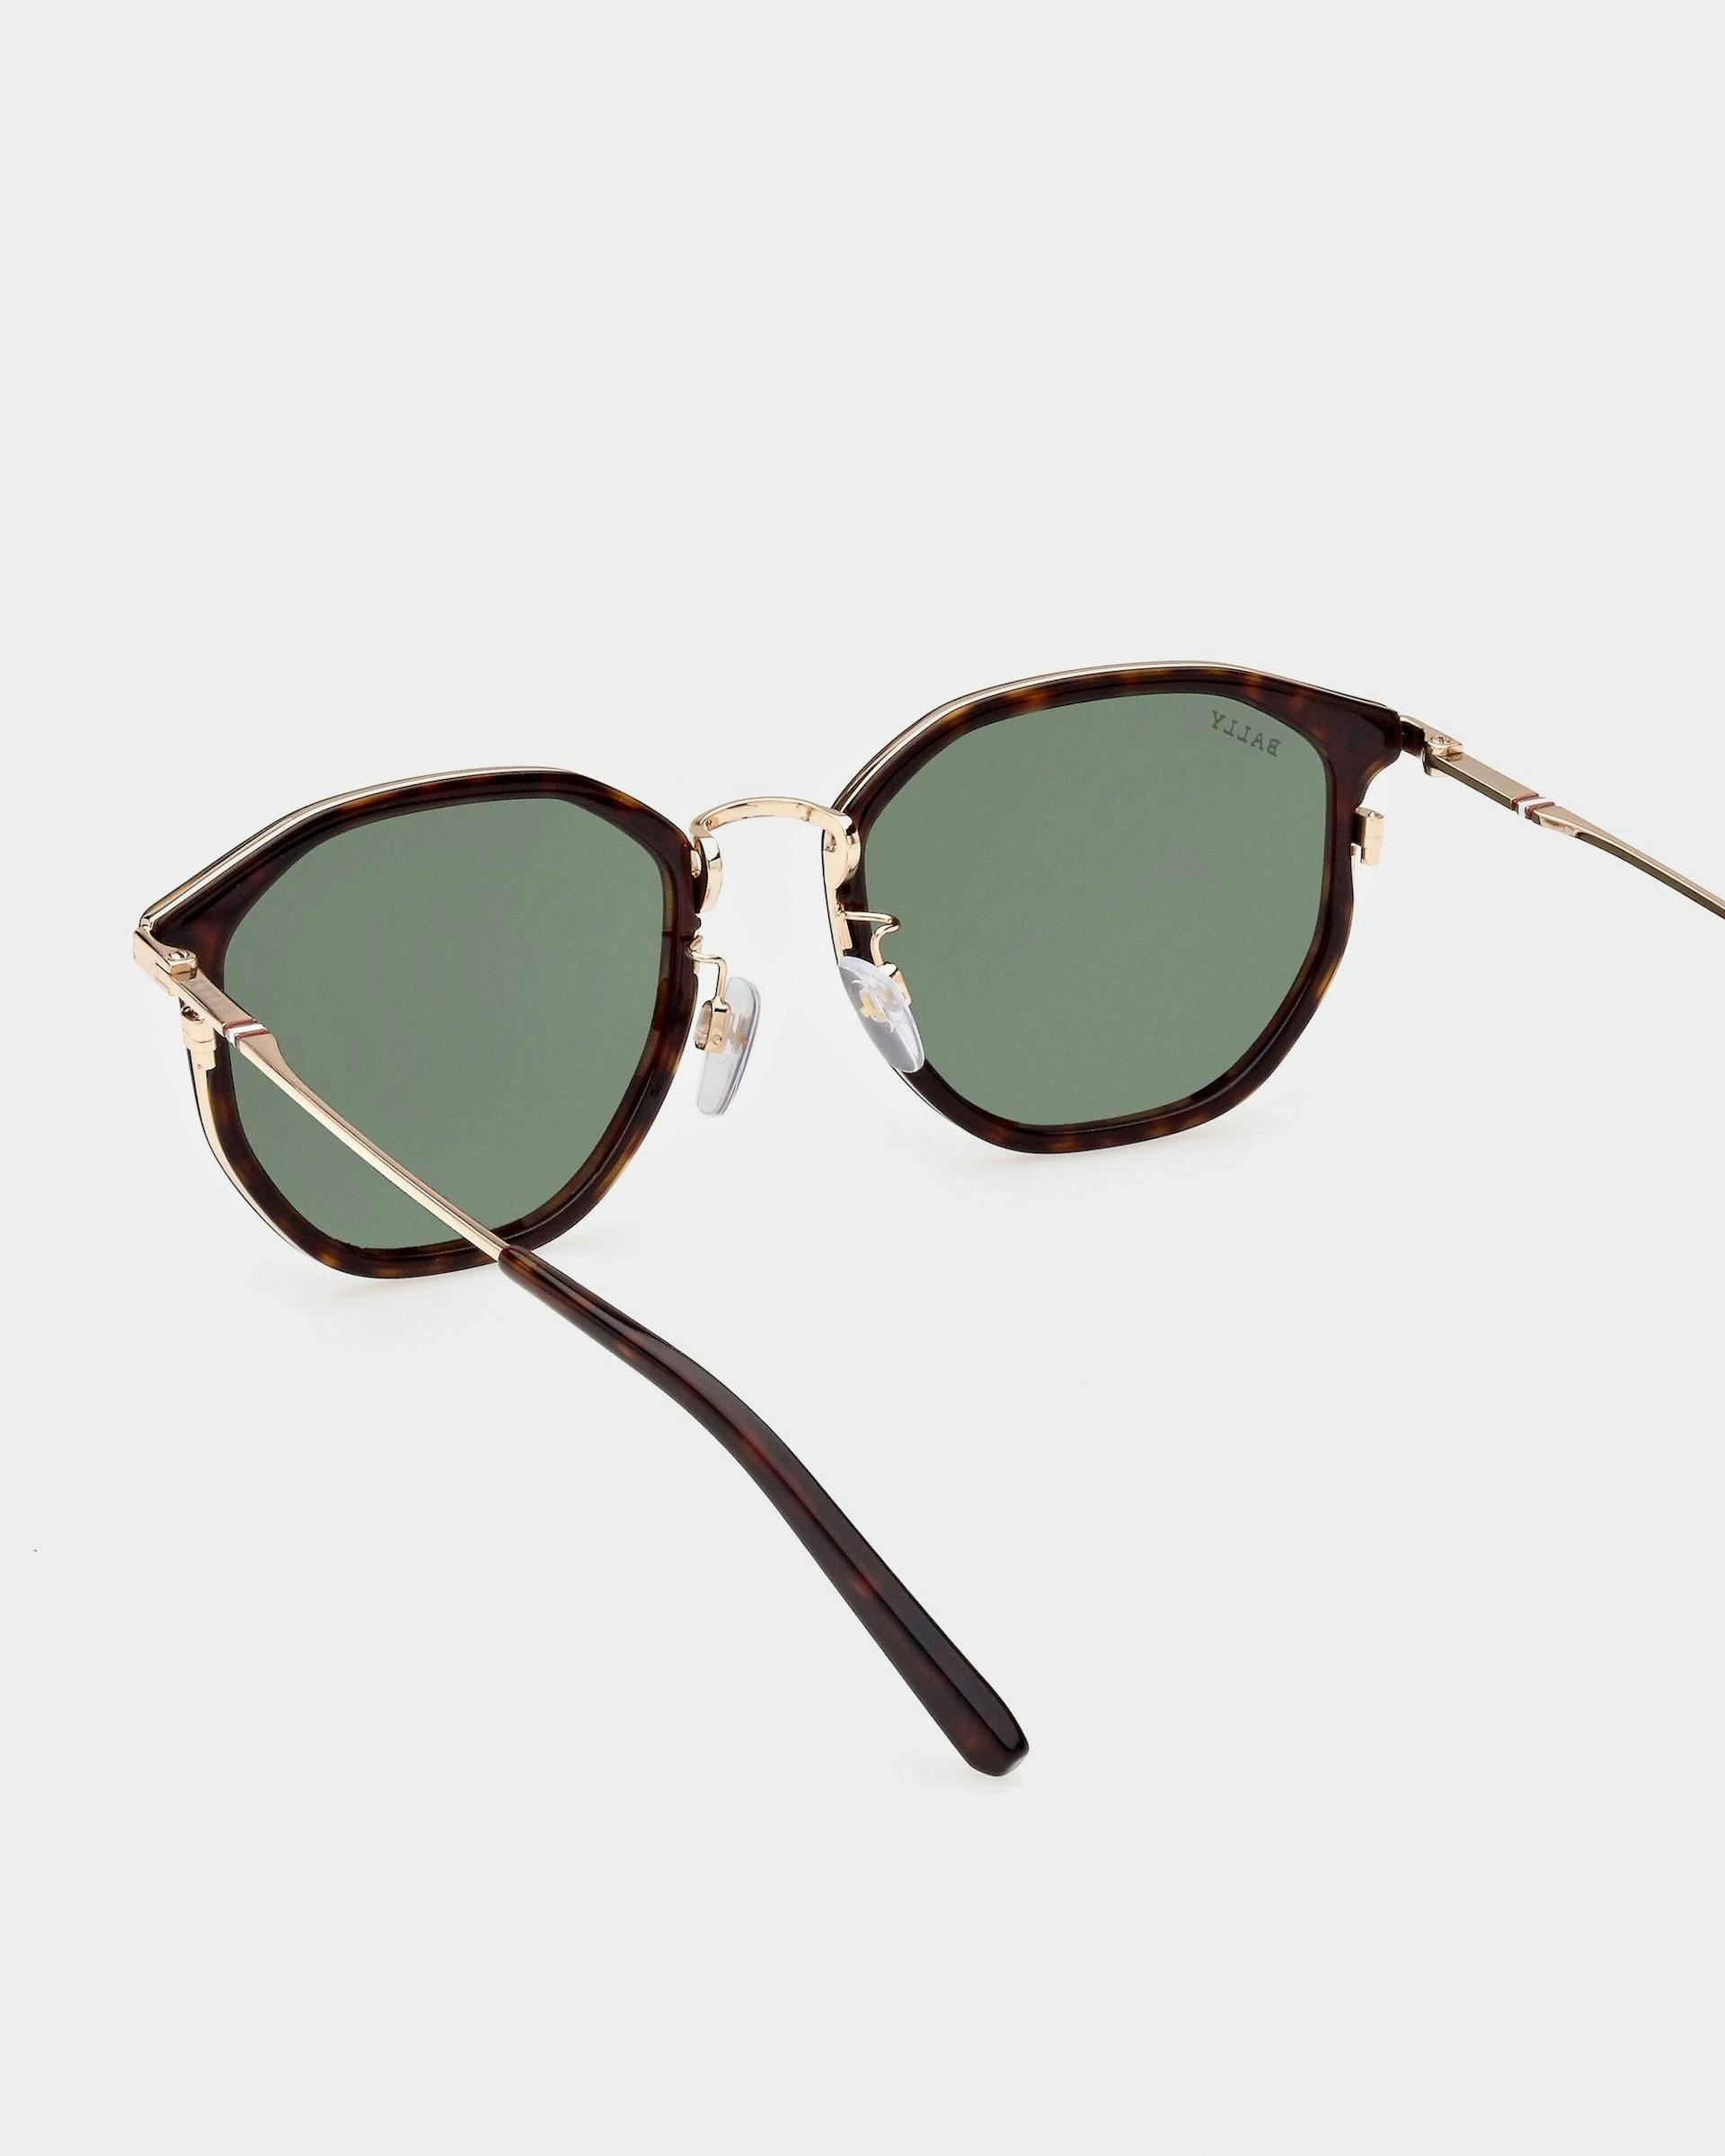 Languard Metal & Acetate Sunglasses In Havana Brown & Green Lenses - Men's - Bally - 02